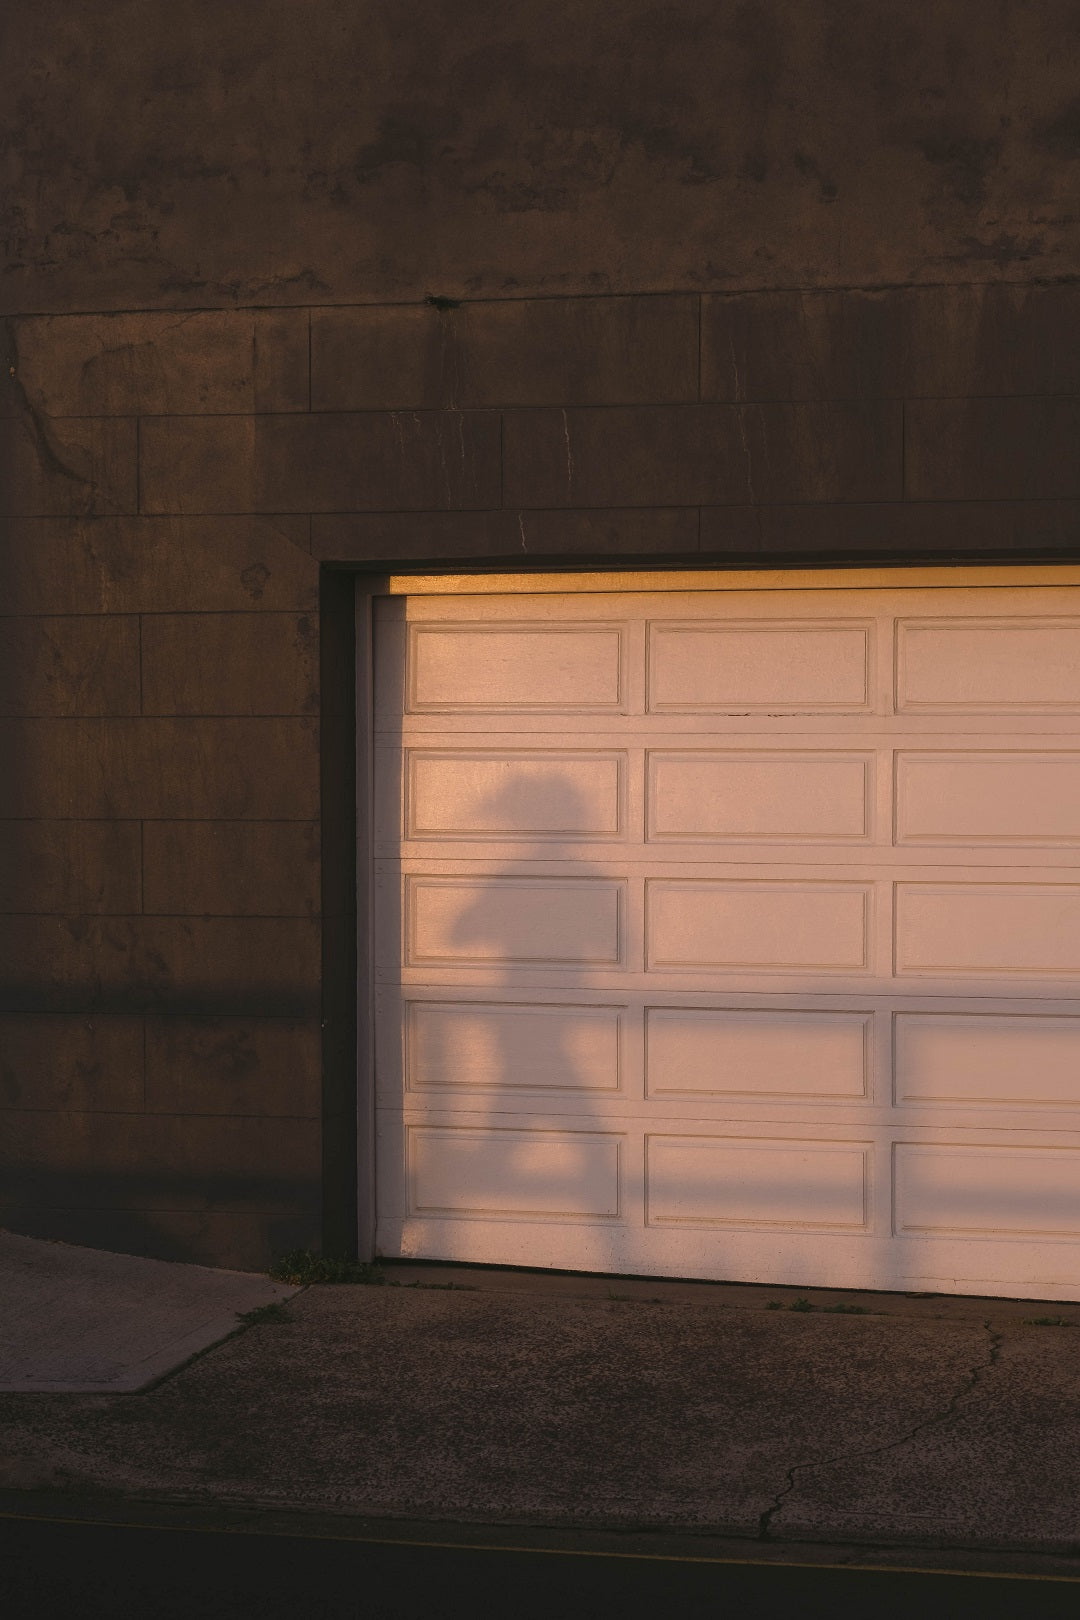 How Long Do Garage Doors Last?